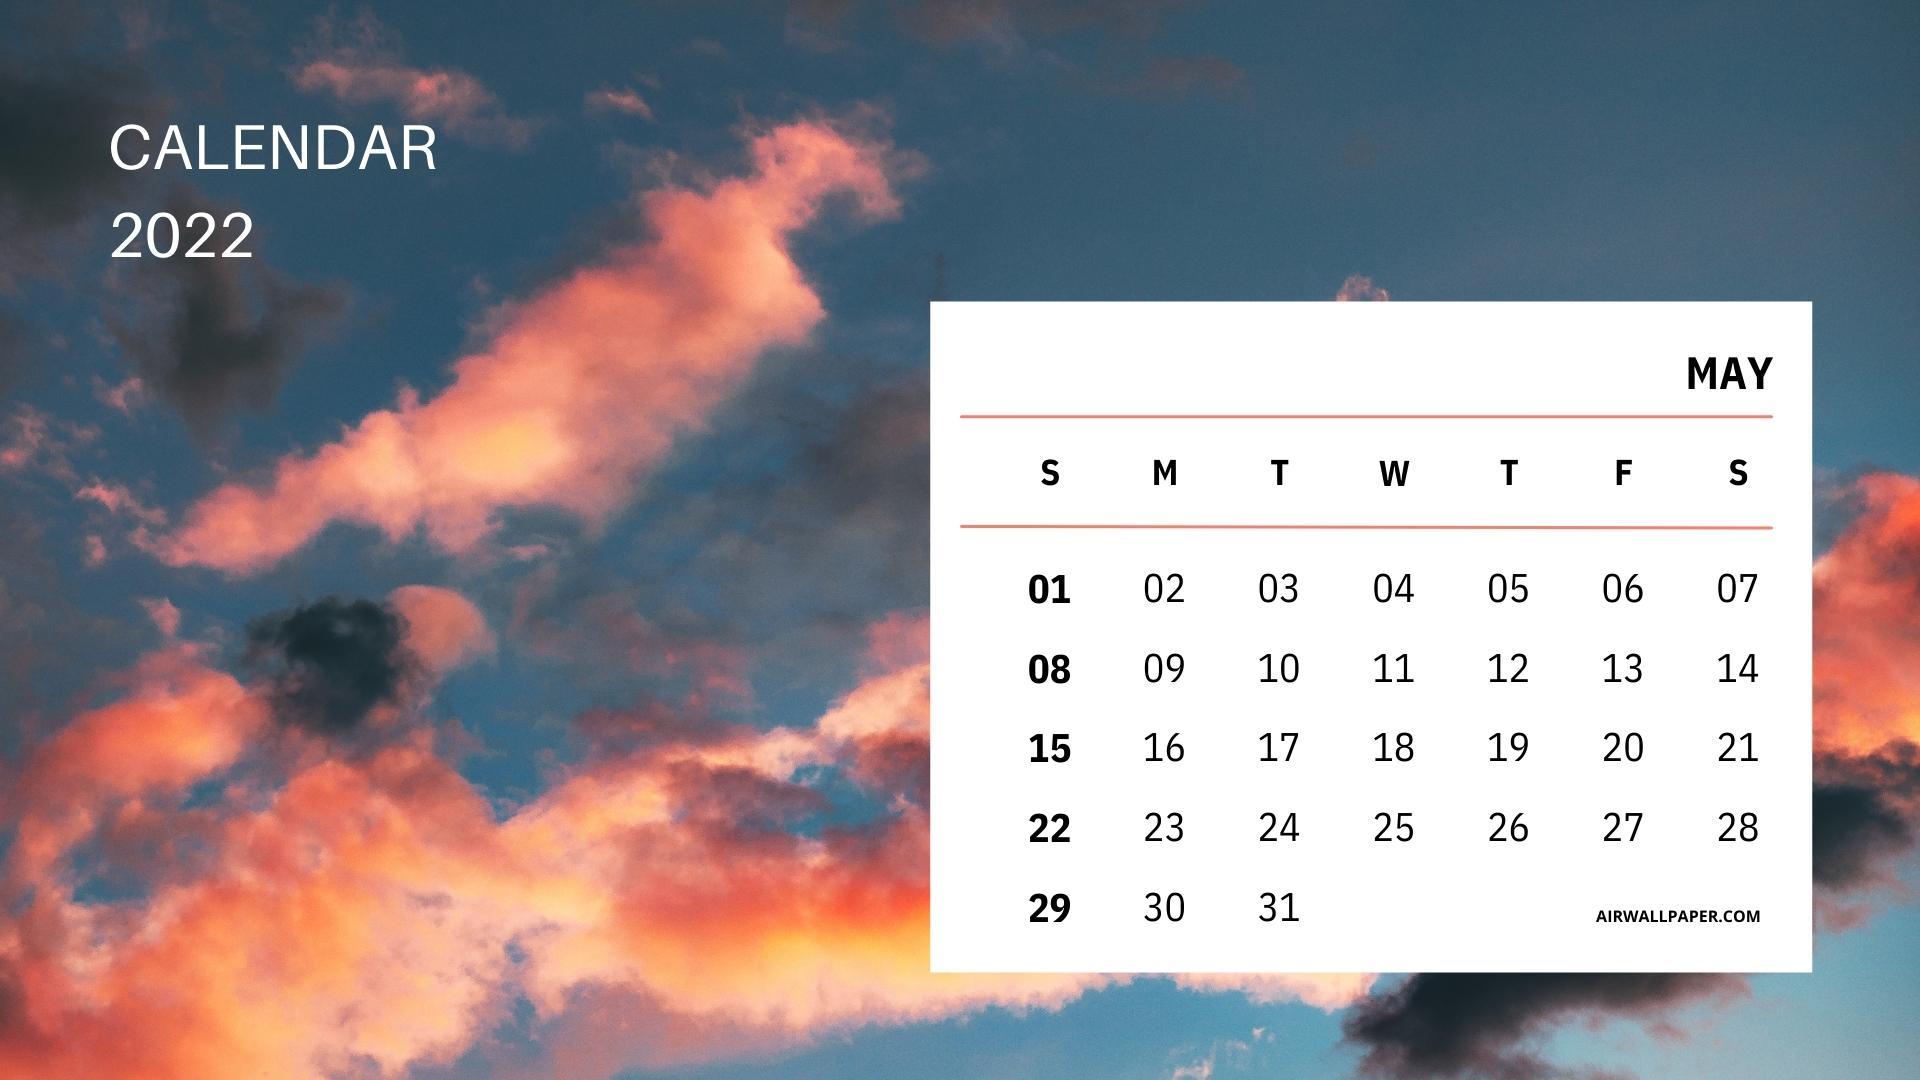 Hình nền lịch tháng 5 năm 2022 sẽ là món quà tuyệt vời giúp bạn cập nhật lịch làm việc, kỷ niệm các ngày lễ và sự kiện đáng nhớ trong tháng. Hình ảnh đẹp mắt, chất lượng cao sẽ làm bạn cảm thấy thích thú và hứng khởi hơn trong công việc và cuộc sống.